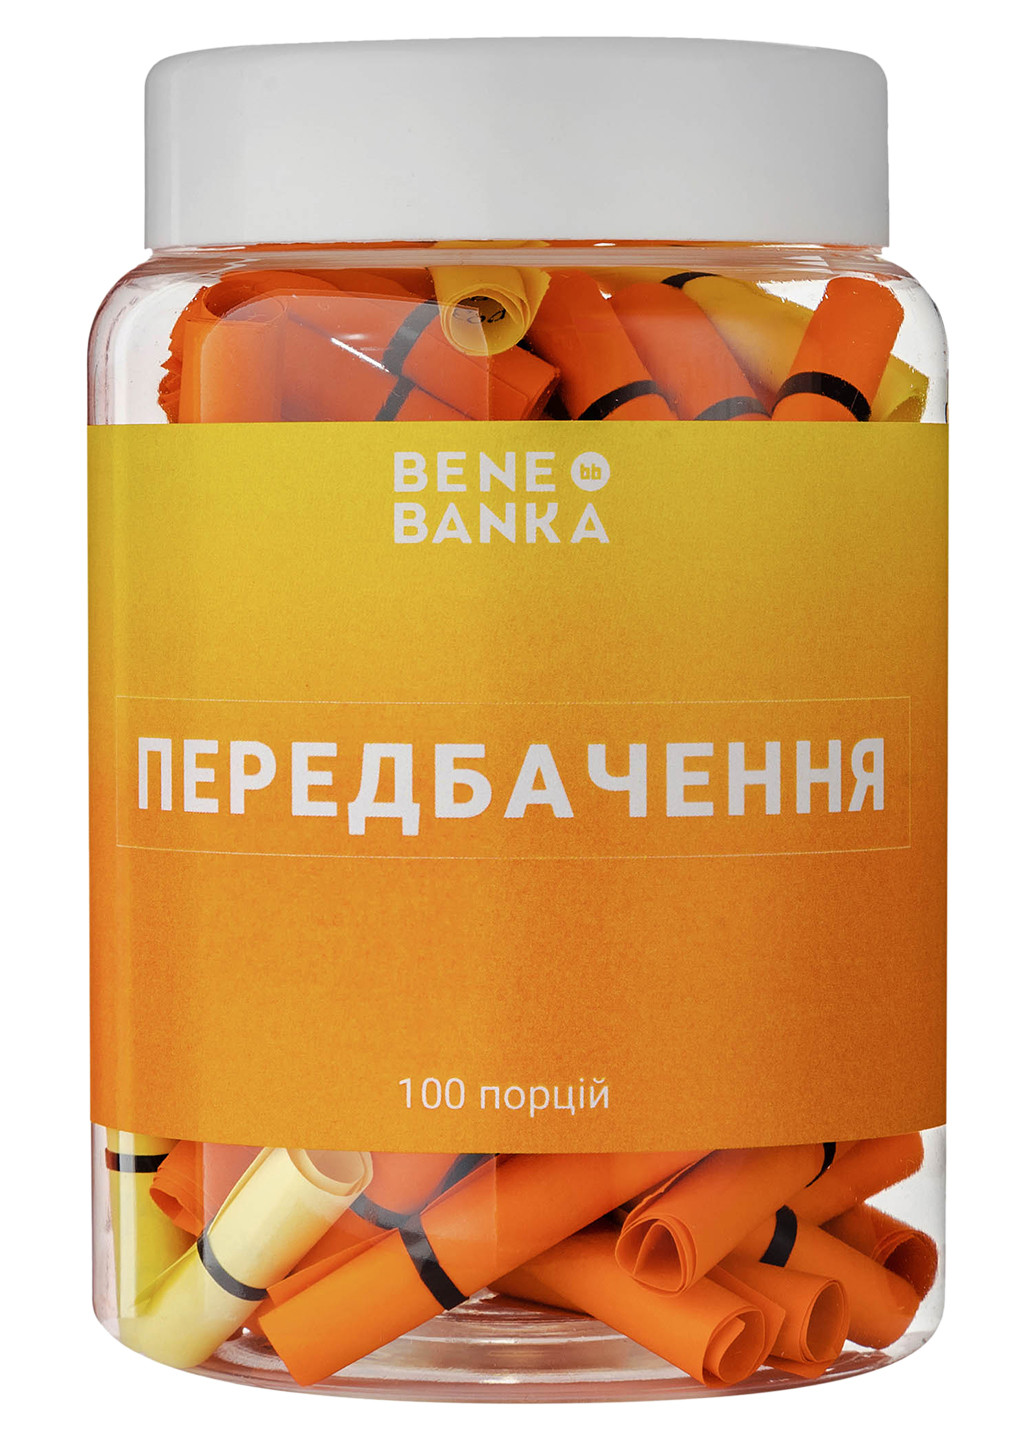 Баночка с записками "Передбачення" украинский язык Bene Banka (200653603)